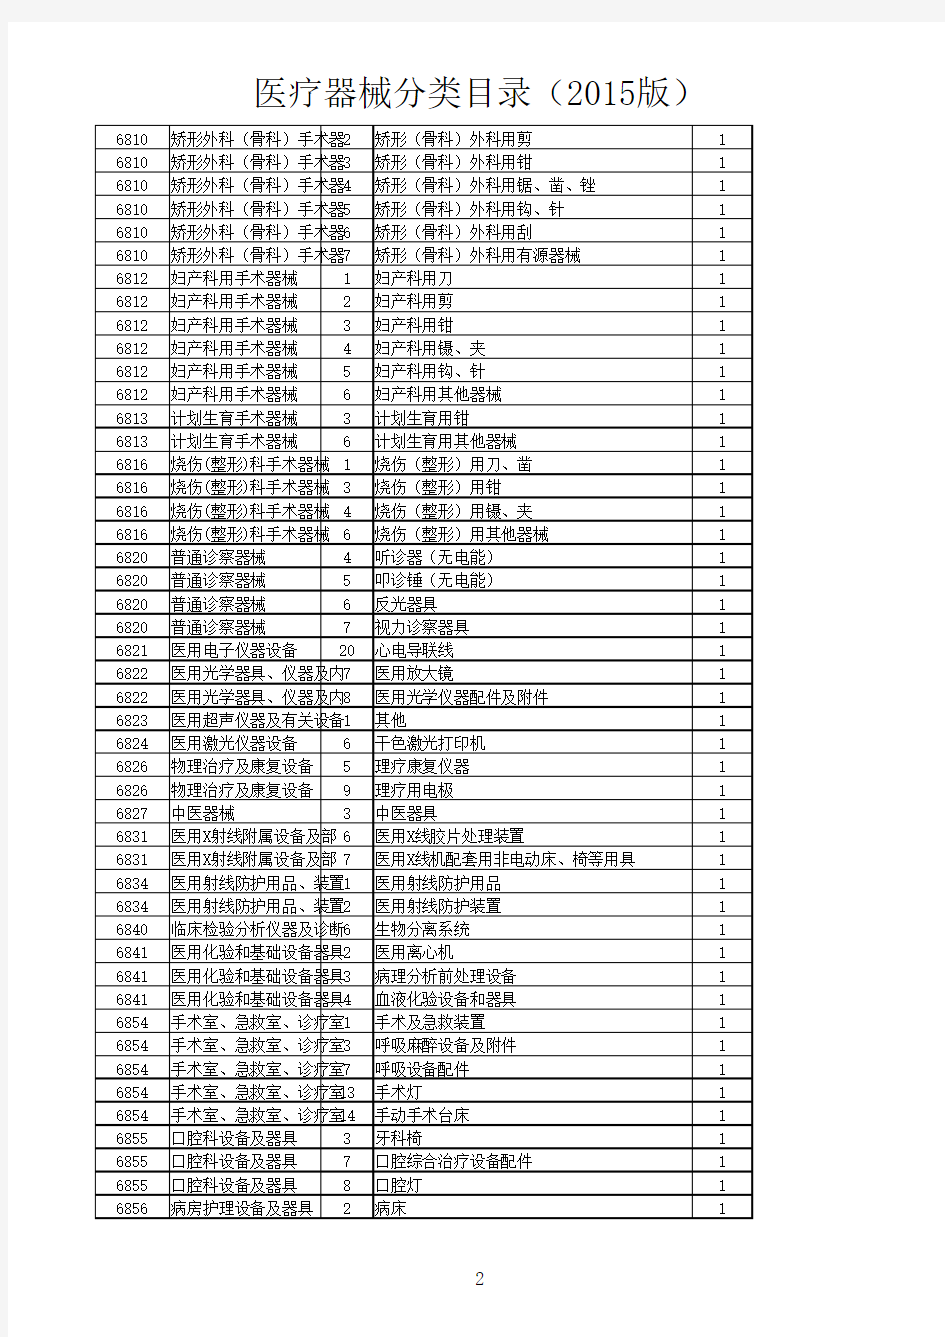 医疗器械分类目录表2015版